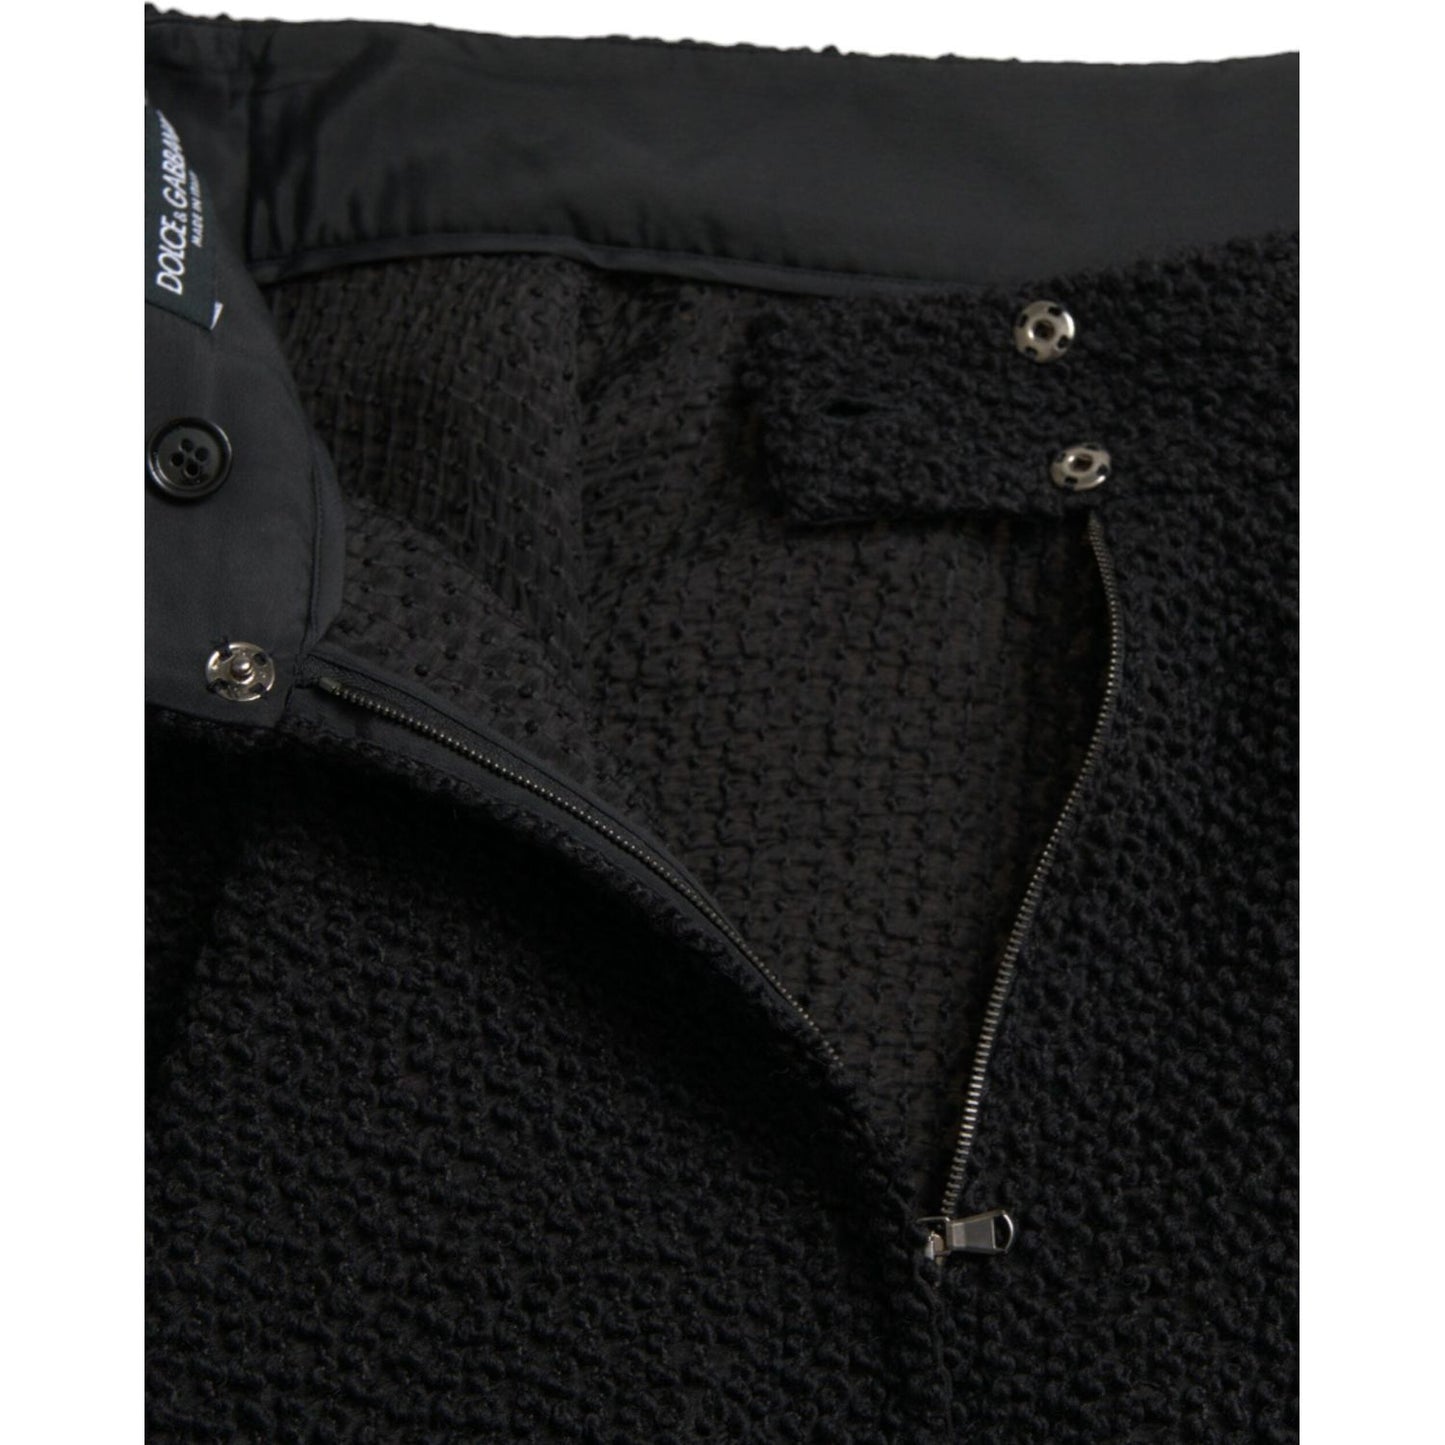 Dolce & Gabbana Black High Waist A-line Knee Length Skirt black-high-waist-a-line-knee-length-skirt